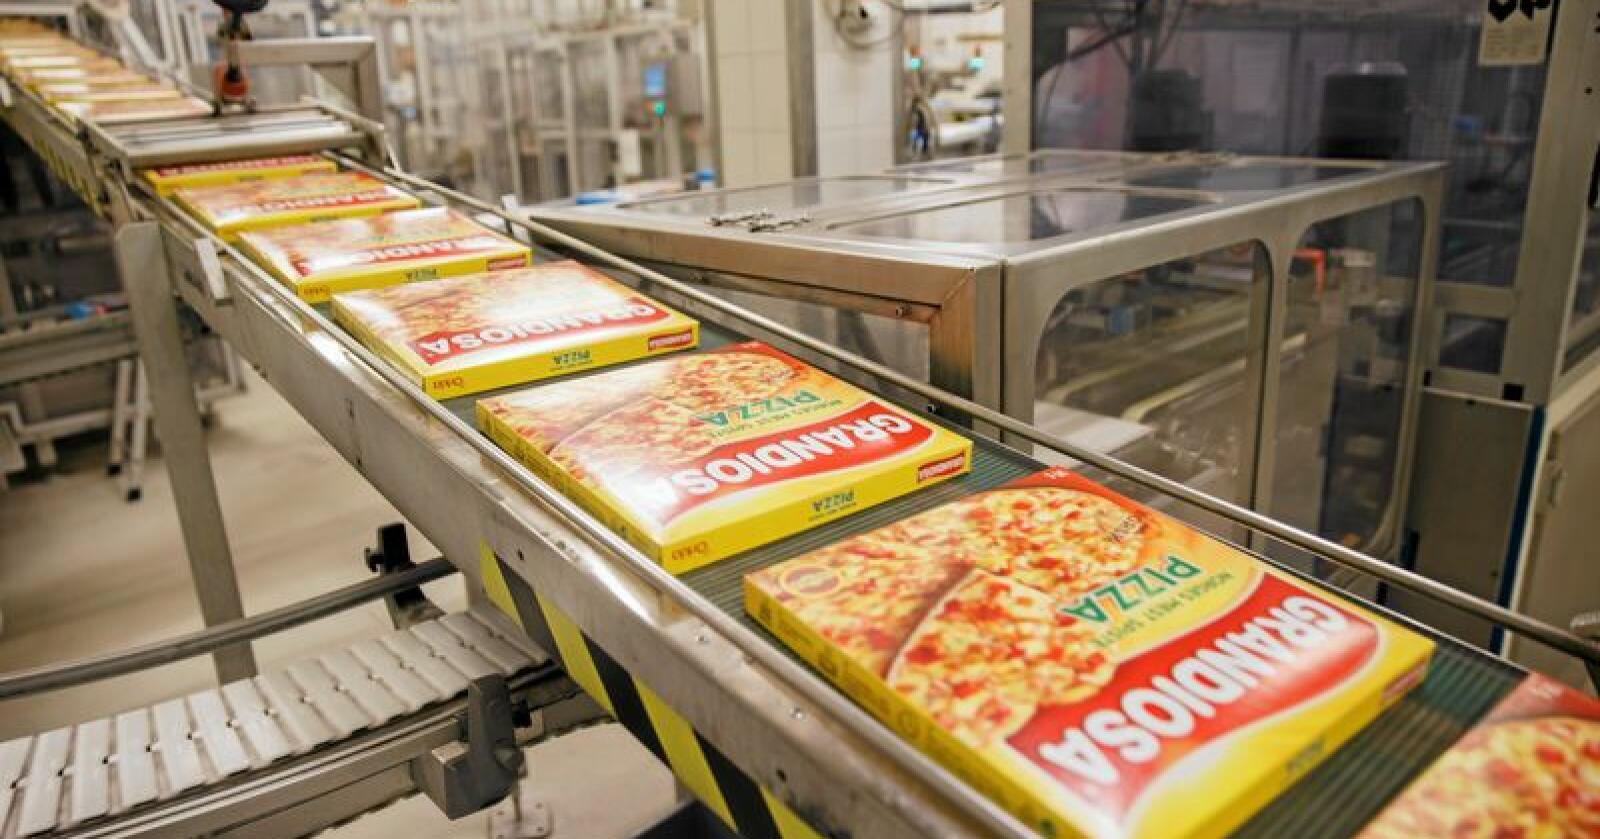 Folkefavoritten Pizza Grandiosa er blant ferdigvarene som i dag nyter godt av norsk tollbeskyttelse. Nå vil EU ha nye forhandlinger med Norge for å få liberalisert handelen. Foto: Cornelius Poppe / NTB scanpix